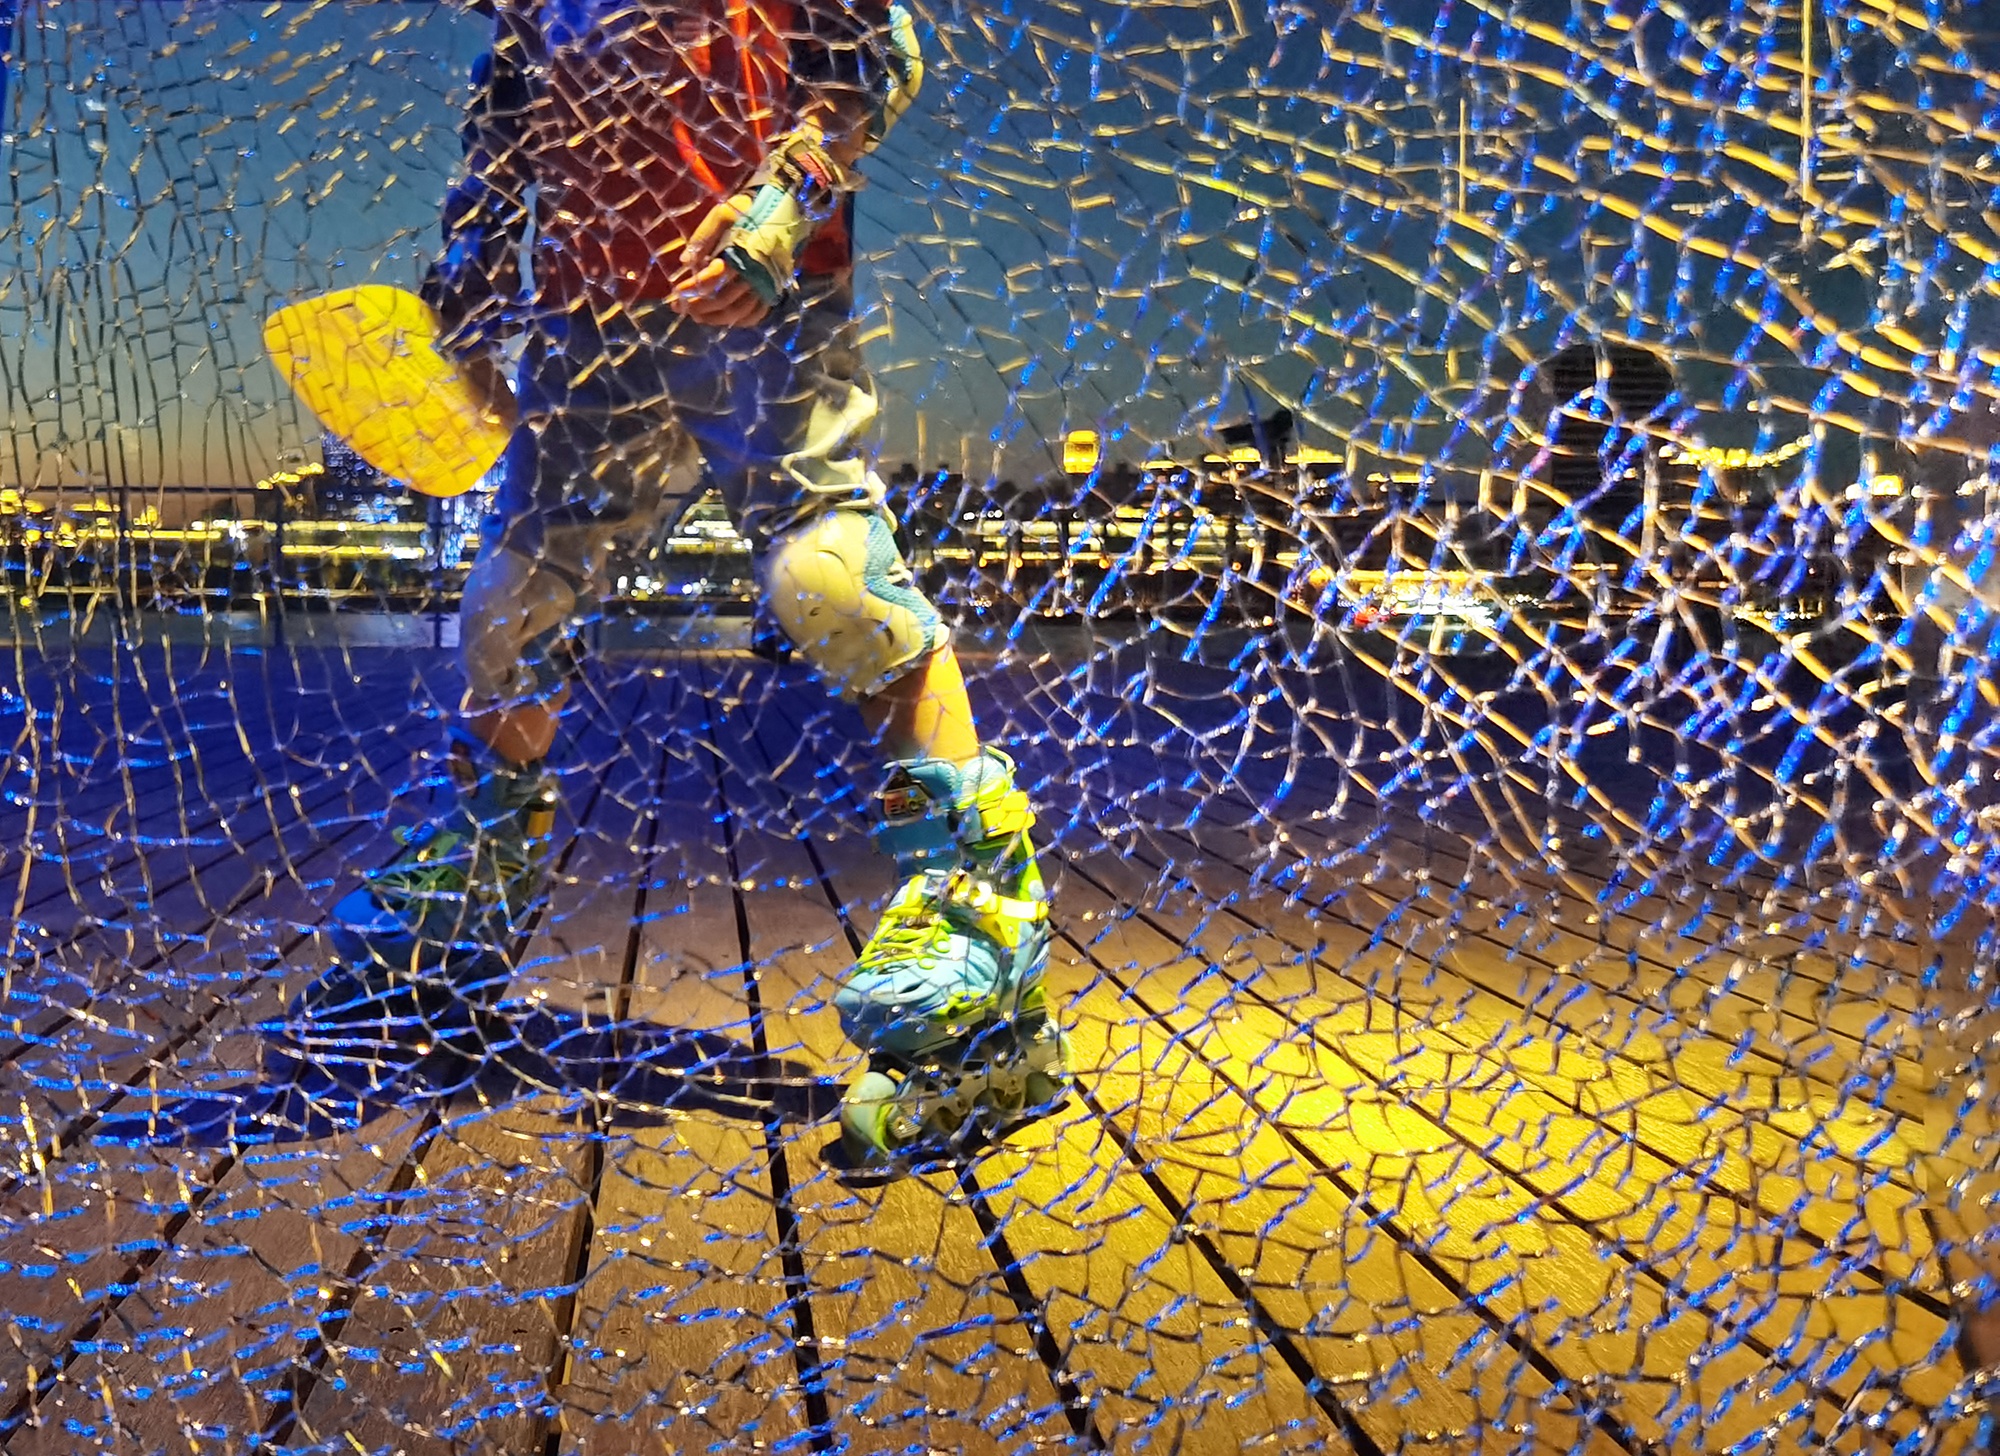 hk_c_路遇-上海黃浦江濱江大道，一位小孩穿着滑輪鞋經過破碎的玻璃欄杆。 范生華.jpeg